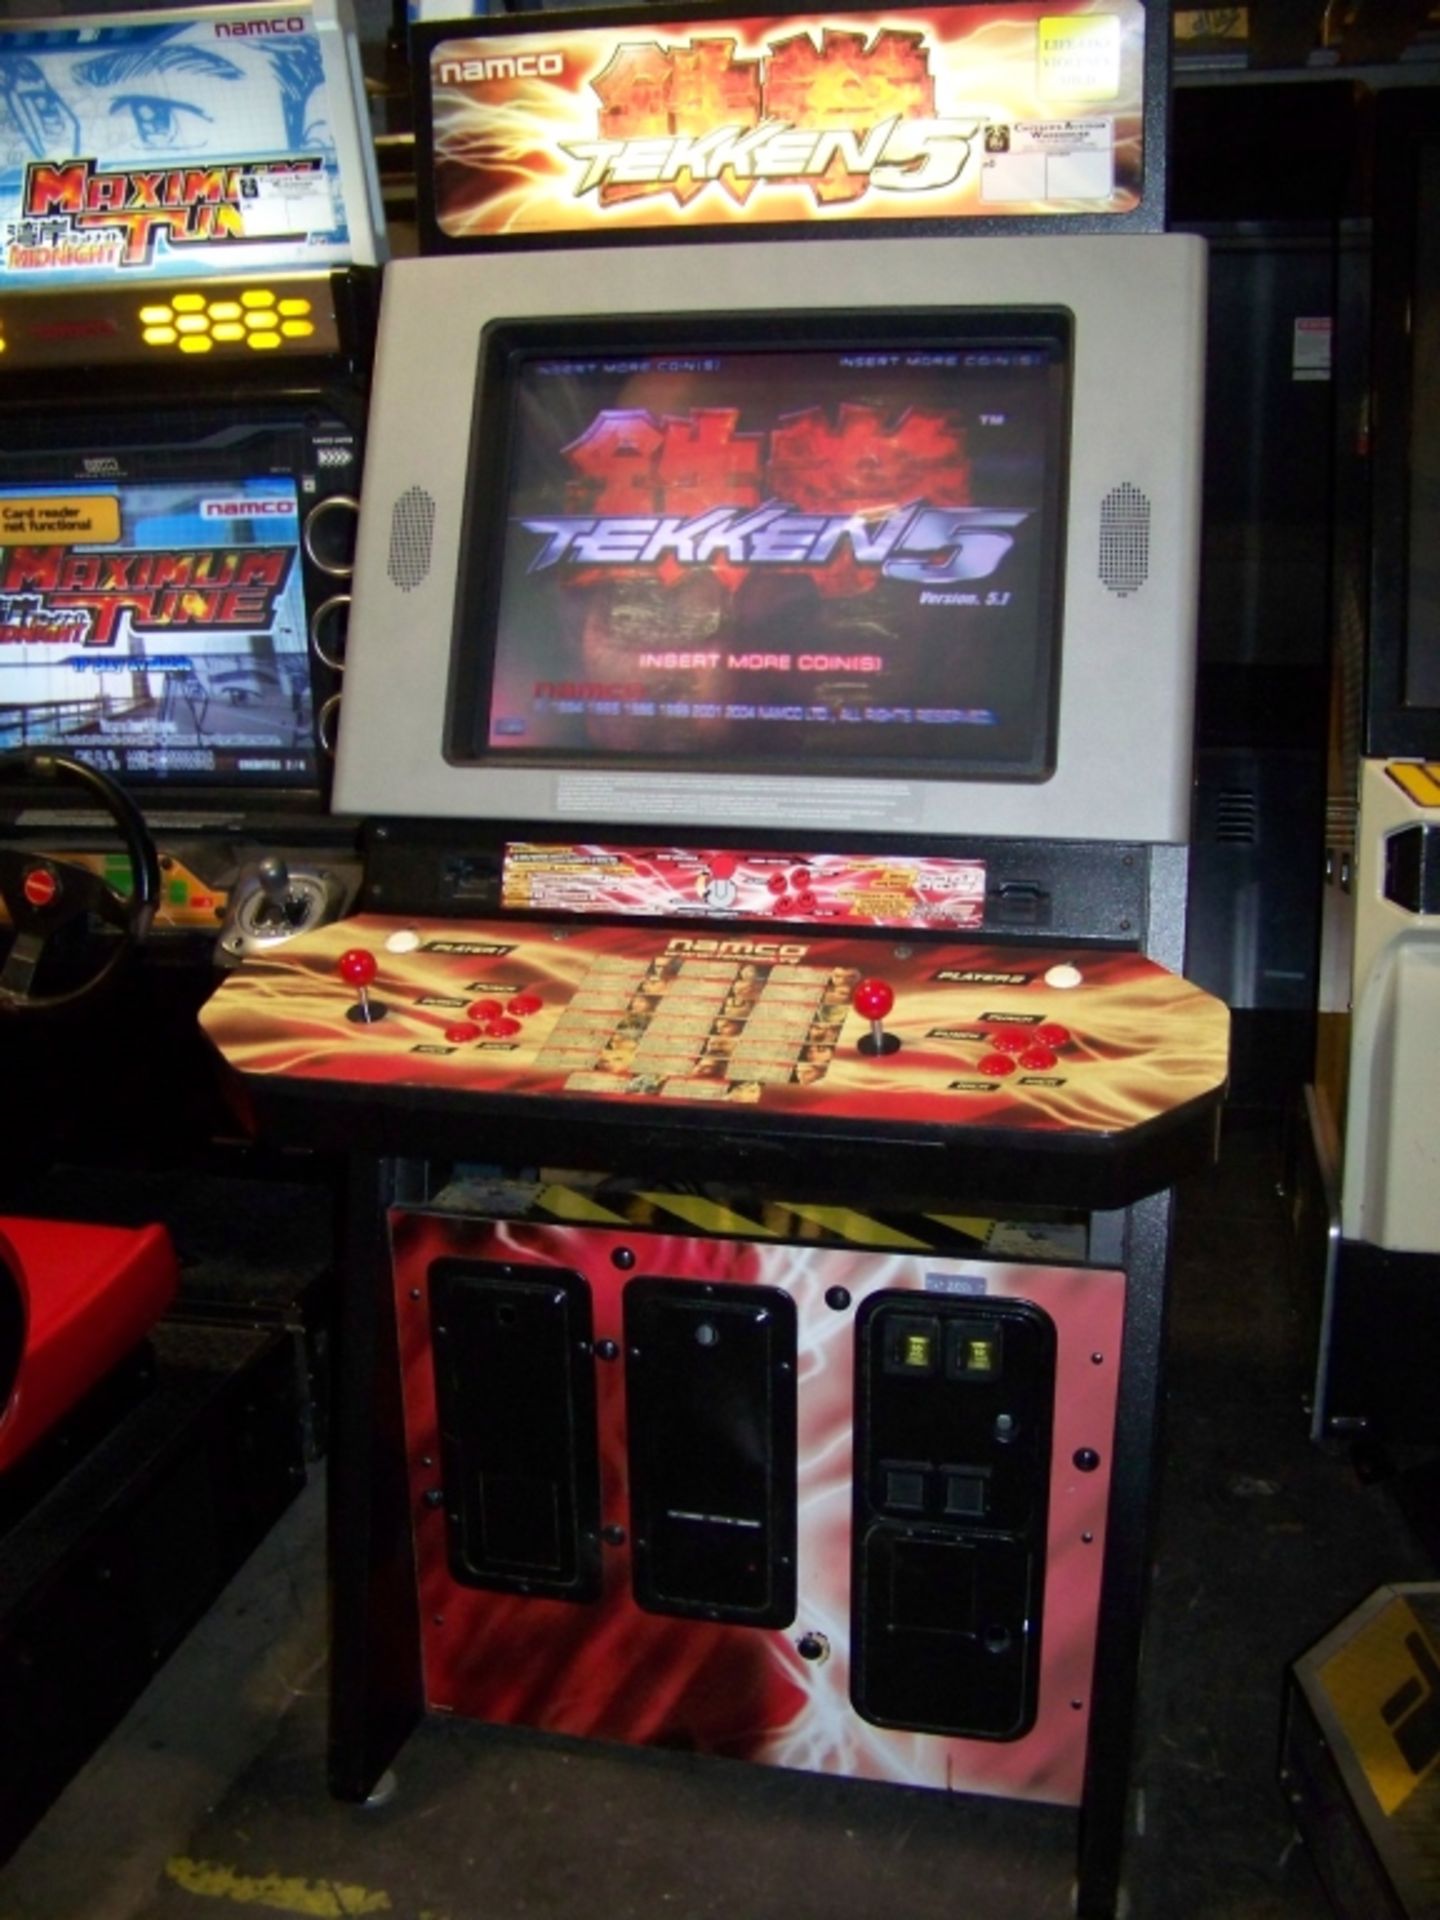 TEKKEN 5 DEDICATED FIGHTING ARCADE GAME NAMCO - Image 3 of 4